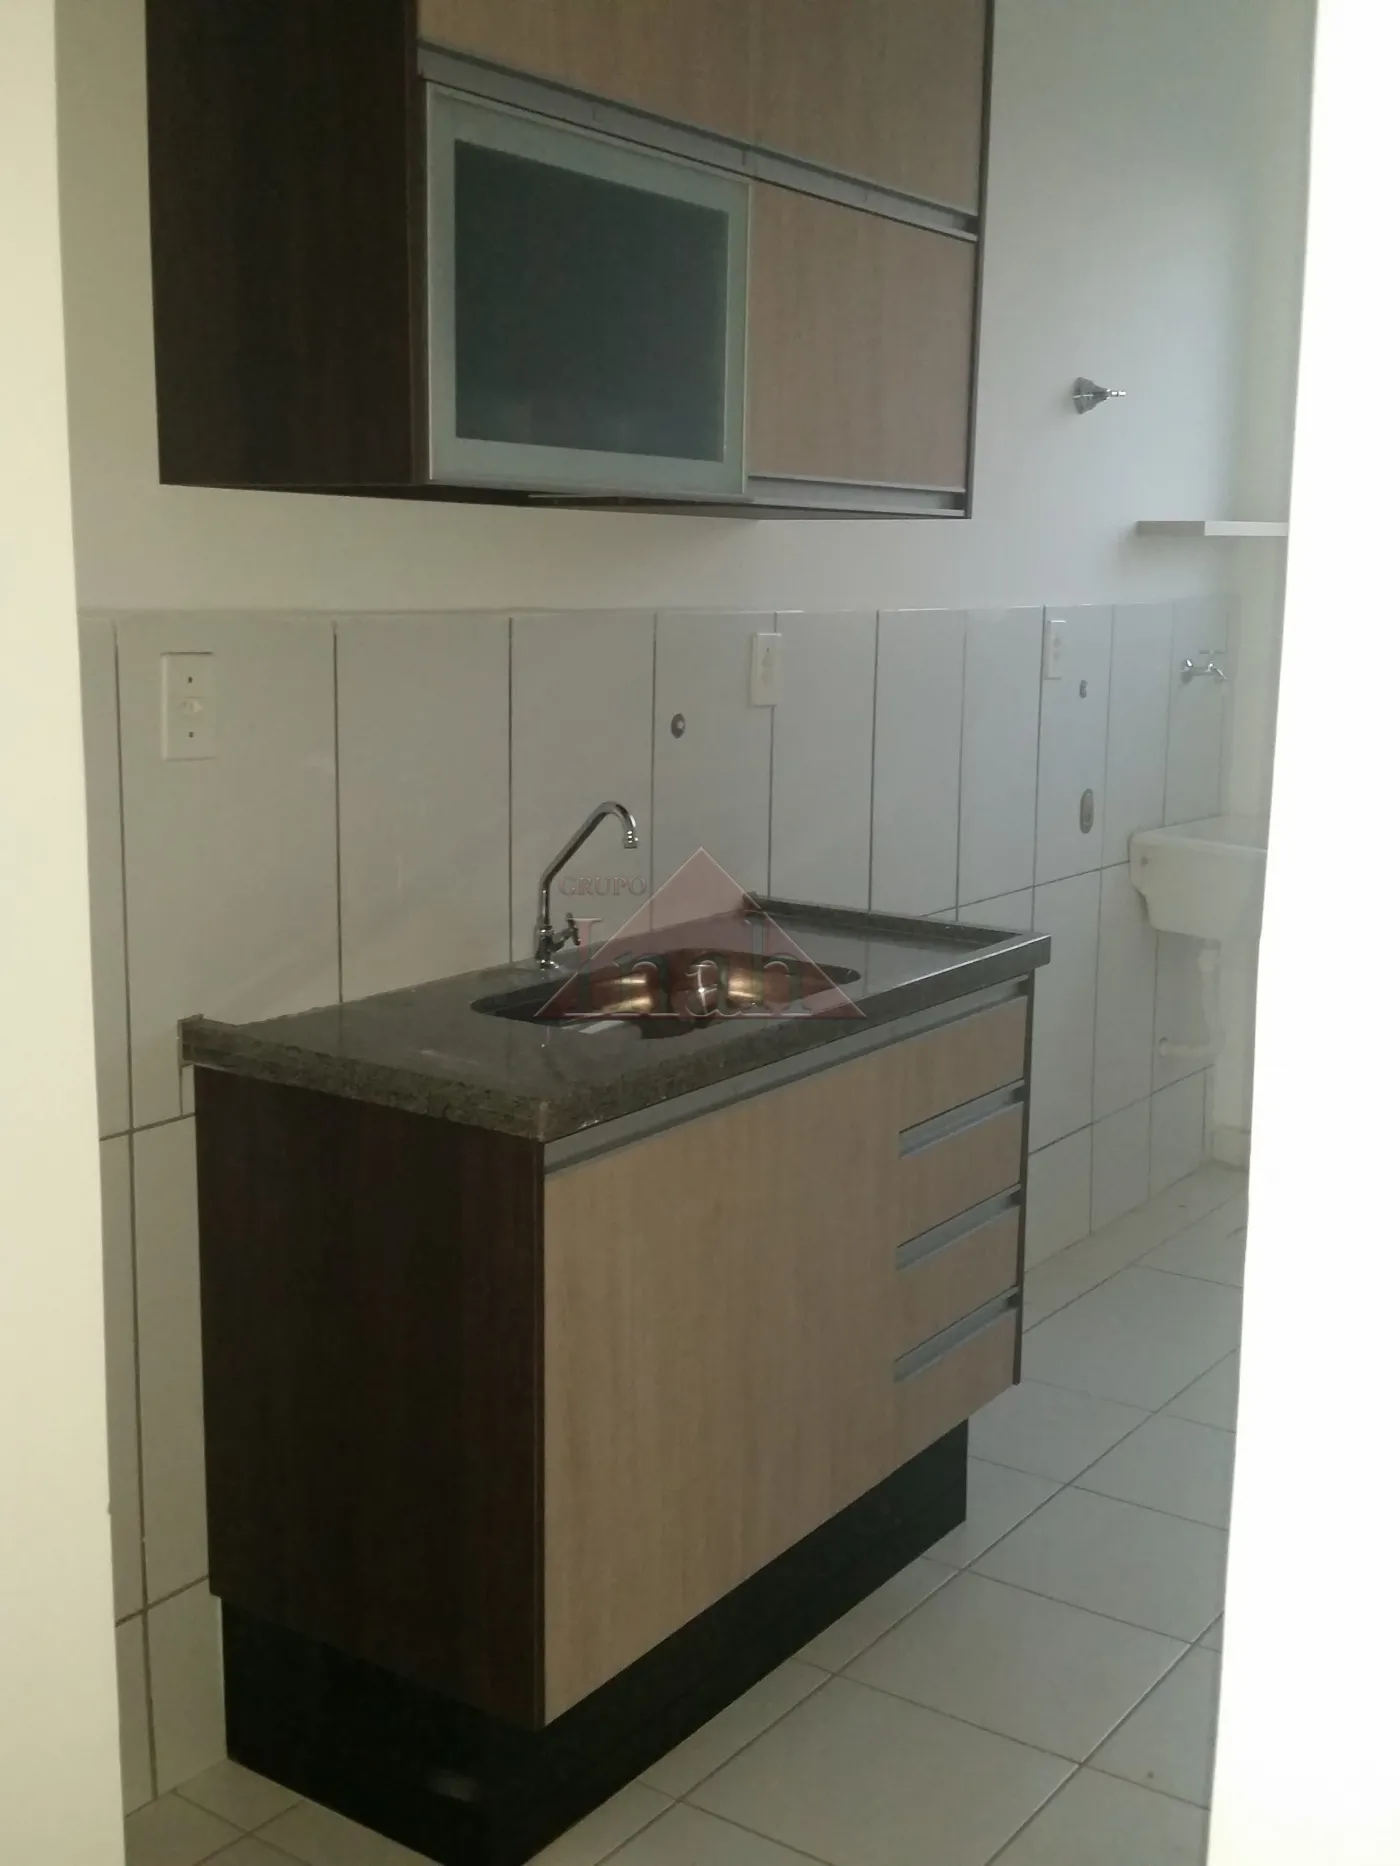 Alugar Apartamentos / Apartamento em Ribeirão Preto R$ 1.300,00 - Foto 1